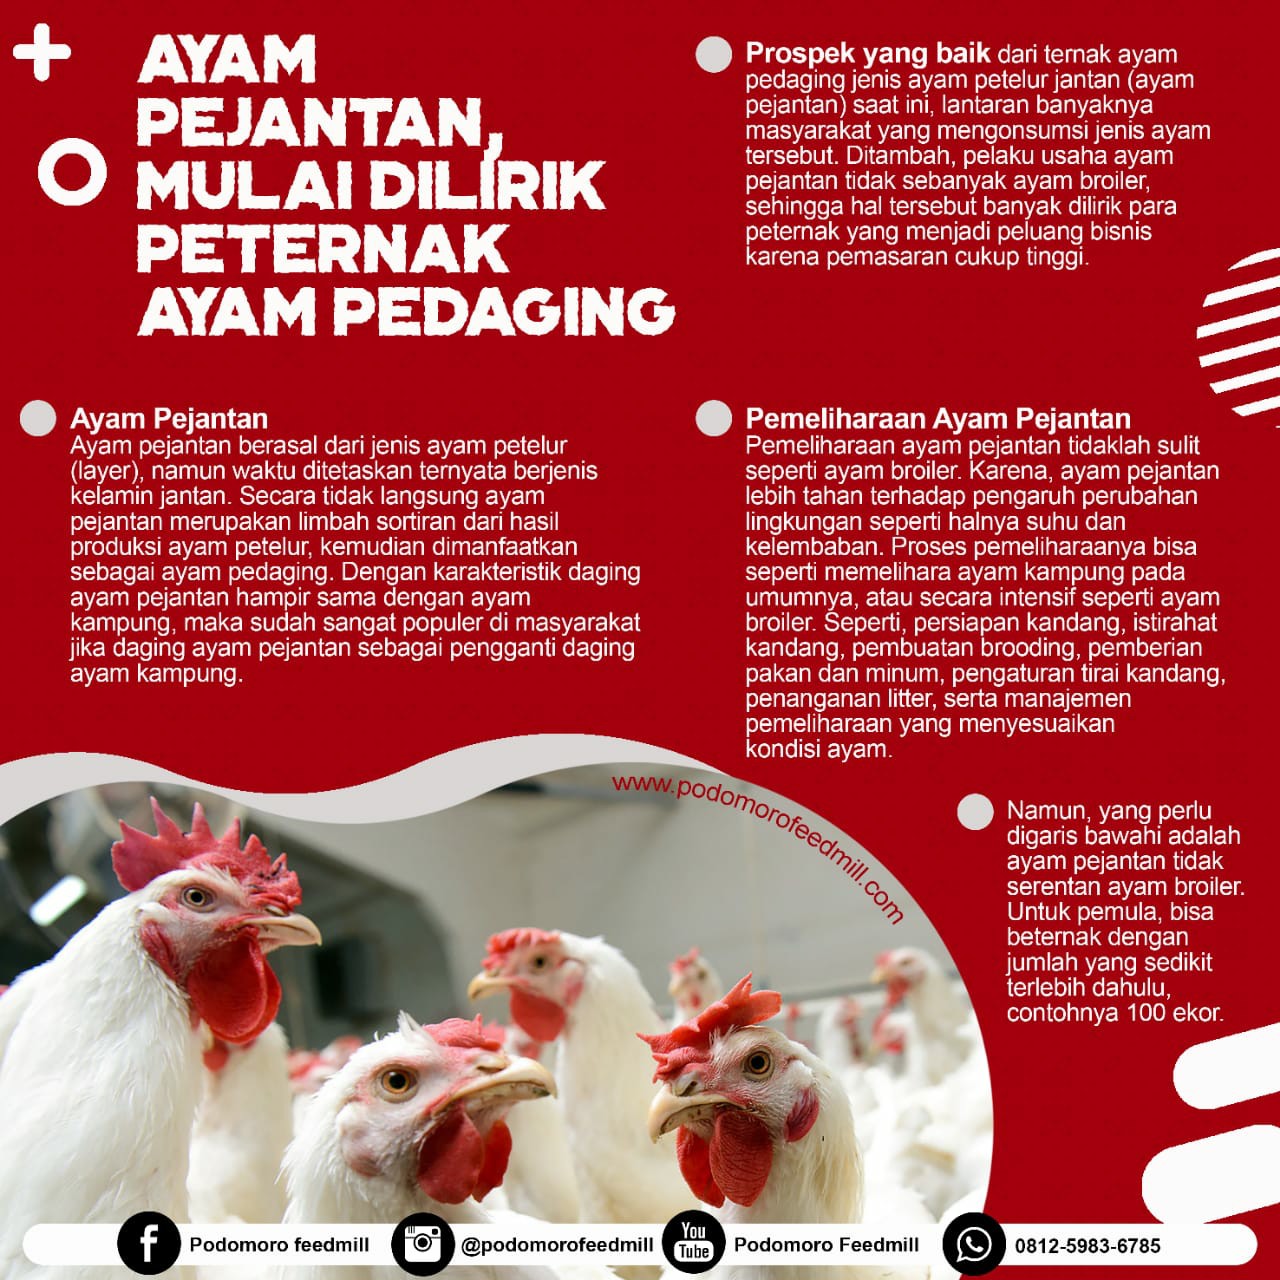 Ayam Pejantan Mulai Dilirik Peternak Ayam Pedaging, Podomoro Poultry